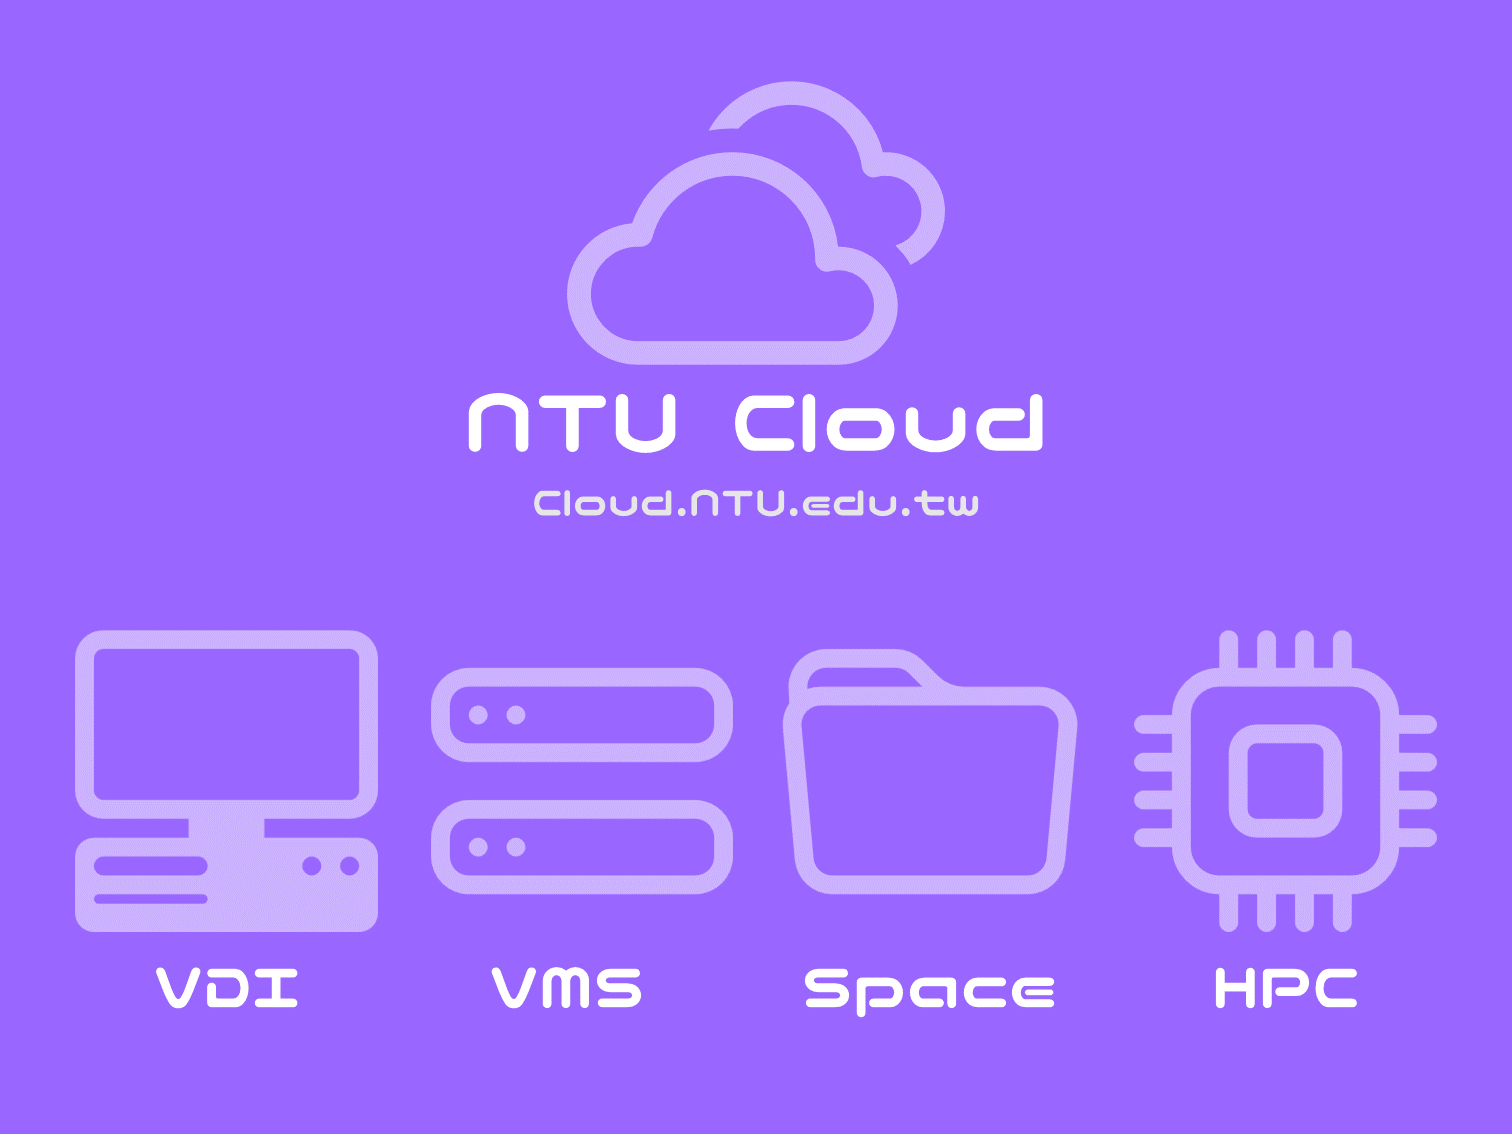 NTU Cloud